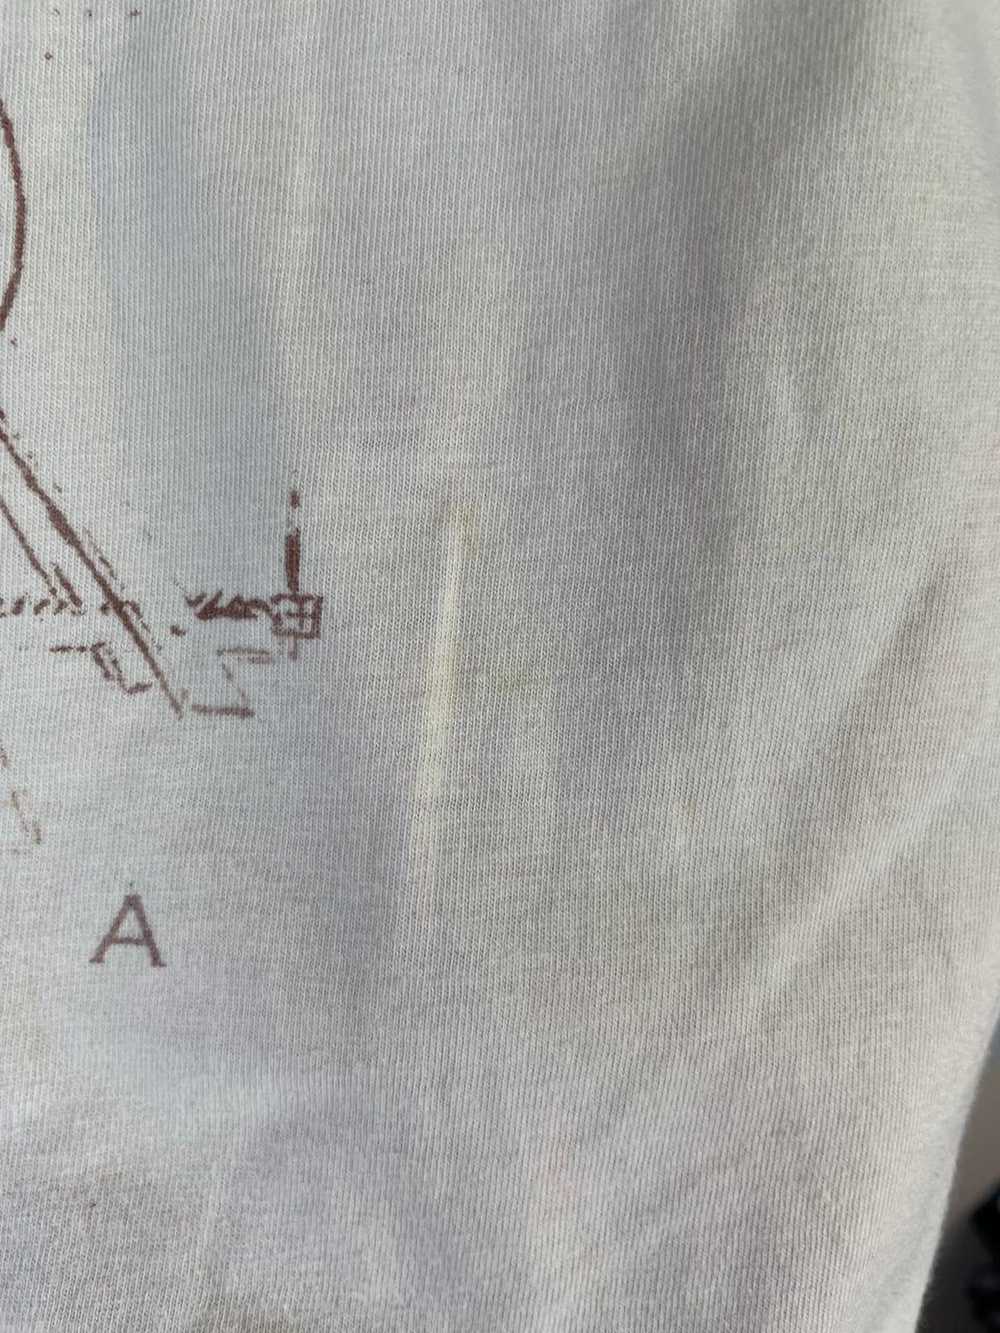 Vintage Leonardo Da Vinci 90s vintage t-shirt siz… - image 4